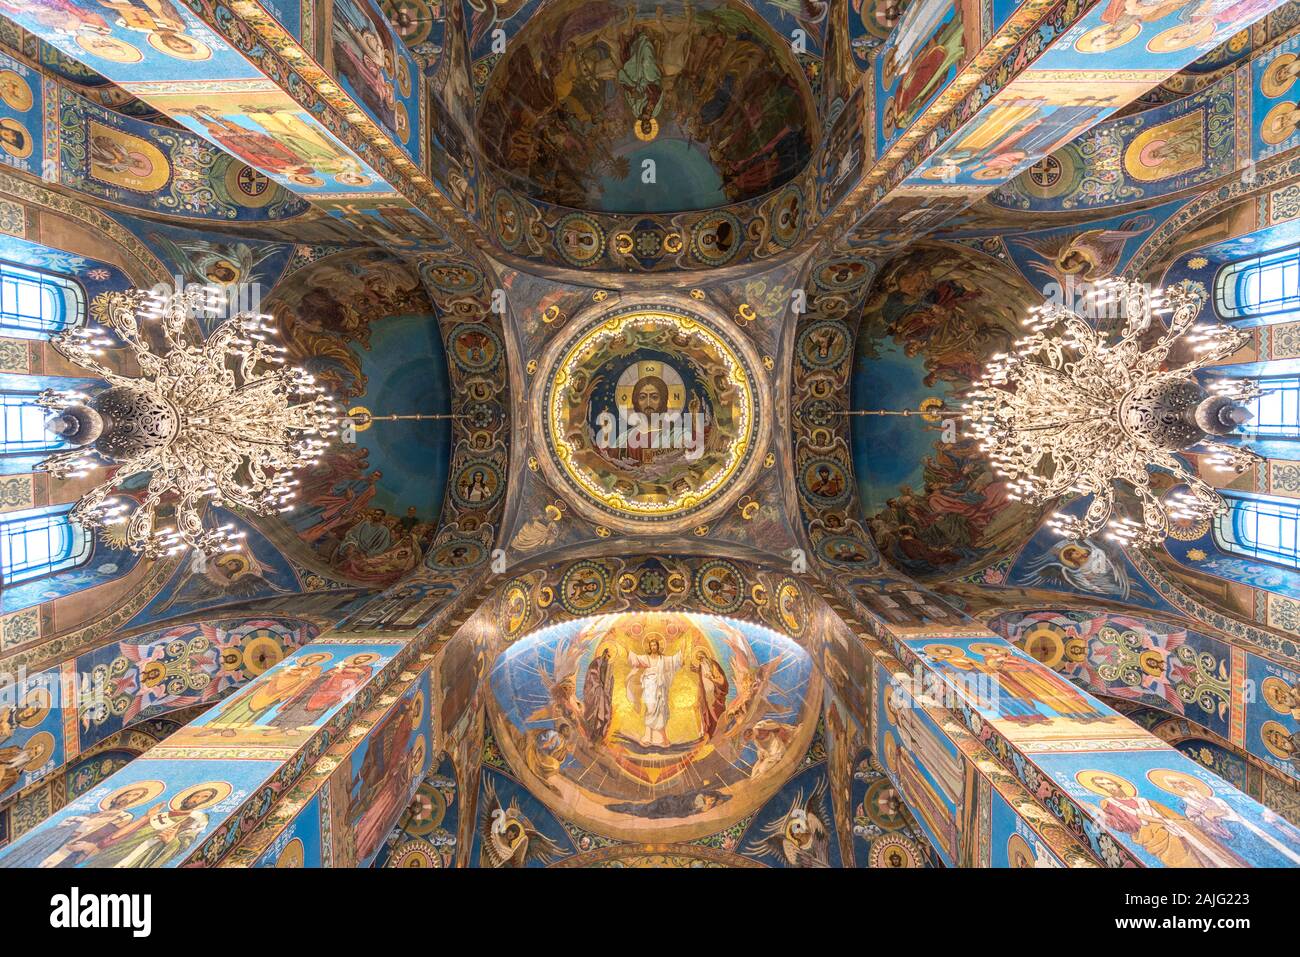 San Petersburgo, Rusia: el interior de la Iglesia del Salvador en la sangre (la sangre derramada) es uno de los principales puntos de interés de San Petersburgo, ángulo de visión amplio Foto de stock